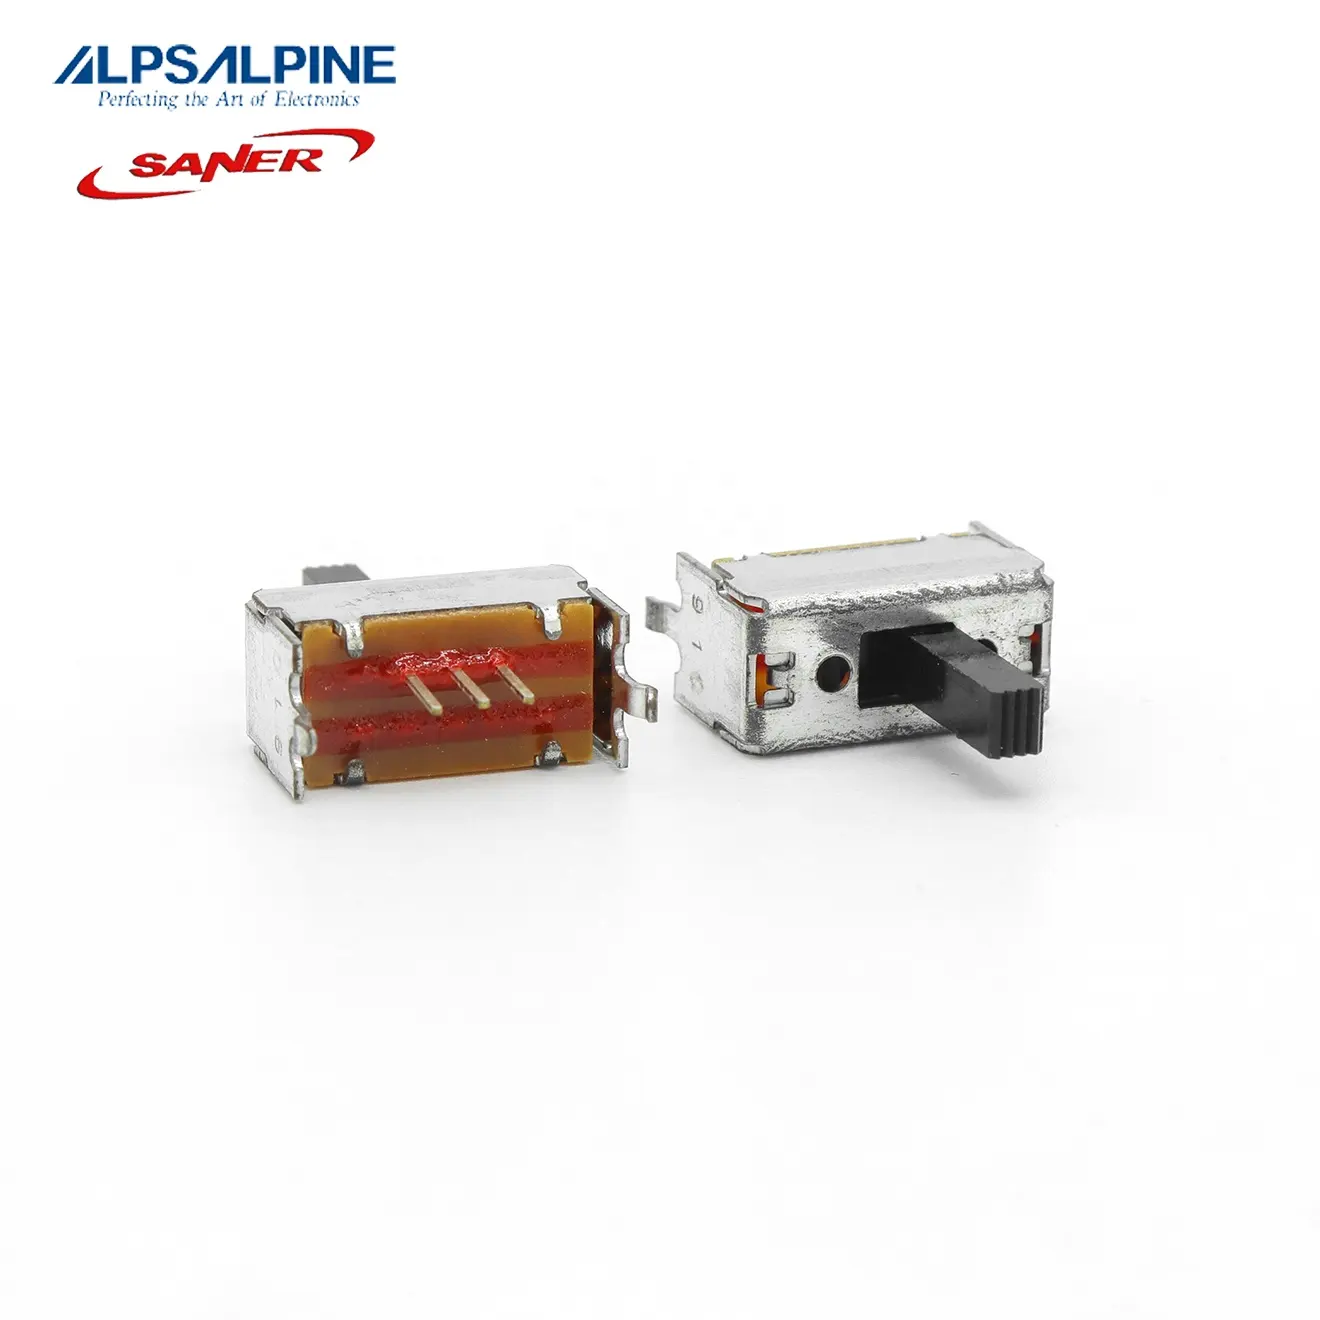 ALPS SSSF012100, interruptor de deslizamiento de garantía auténtica, tipo de viaje, 8,5mm, 2mm